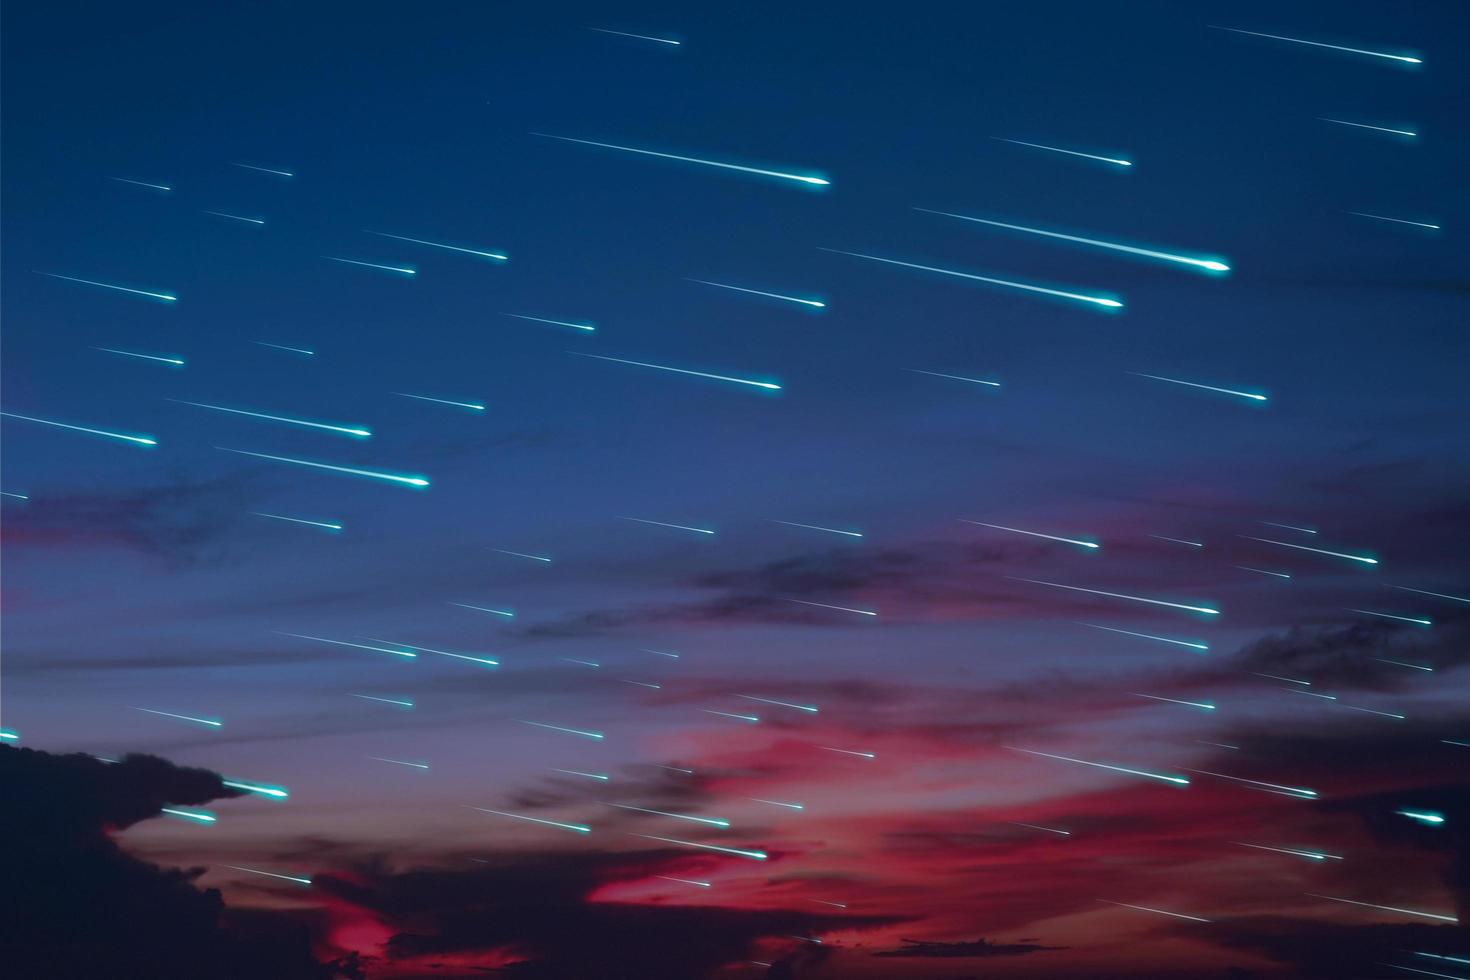 lluvia de meteoritos azules en la puesta del sol cielo nocturno nube oscura foto